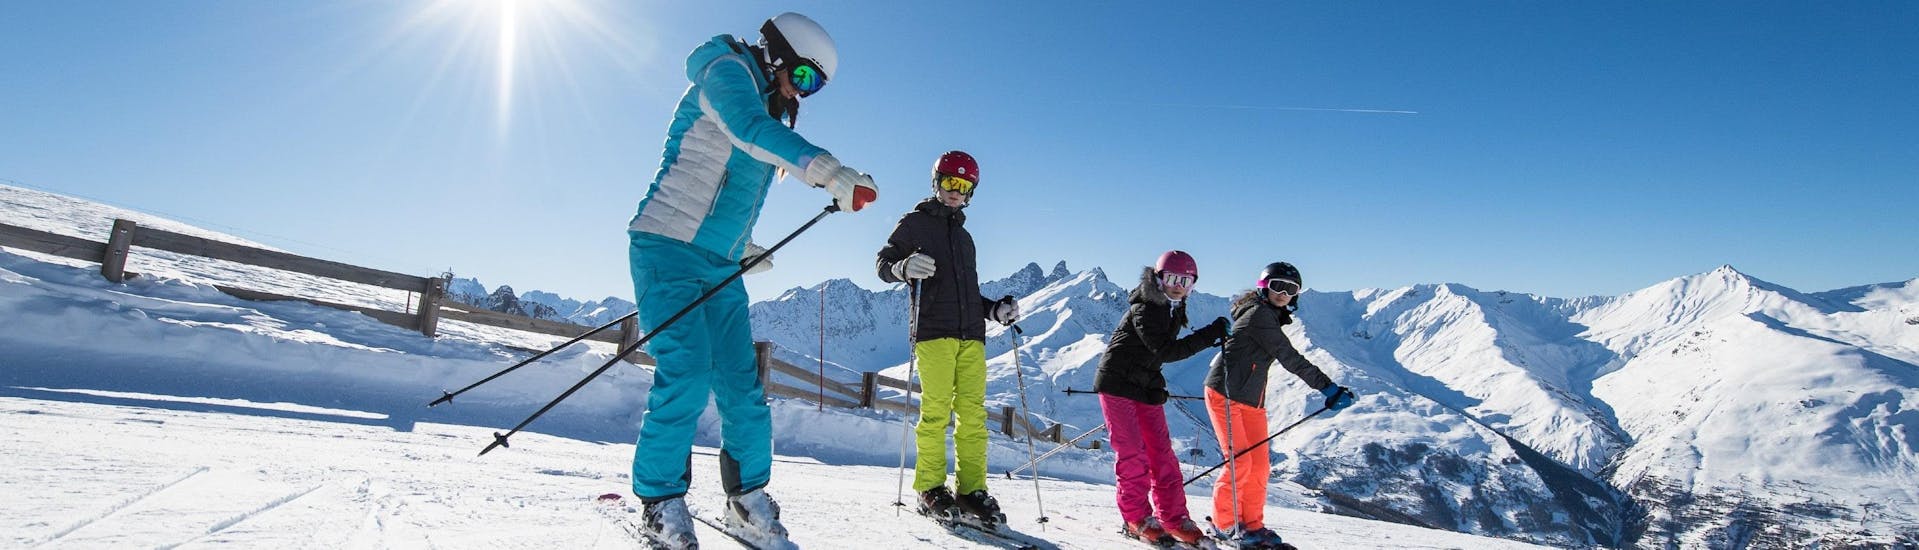 Een skileraar van ESI Alpe d'Huez - Europese skischool laat de deelnemers de juiste gebaren zien tijdens hun privé skilessen voor kinderen van alle niveaus.